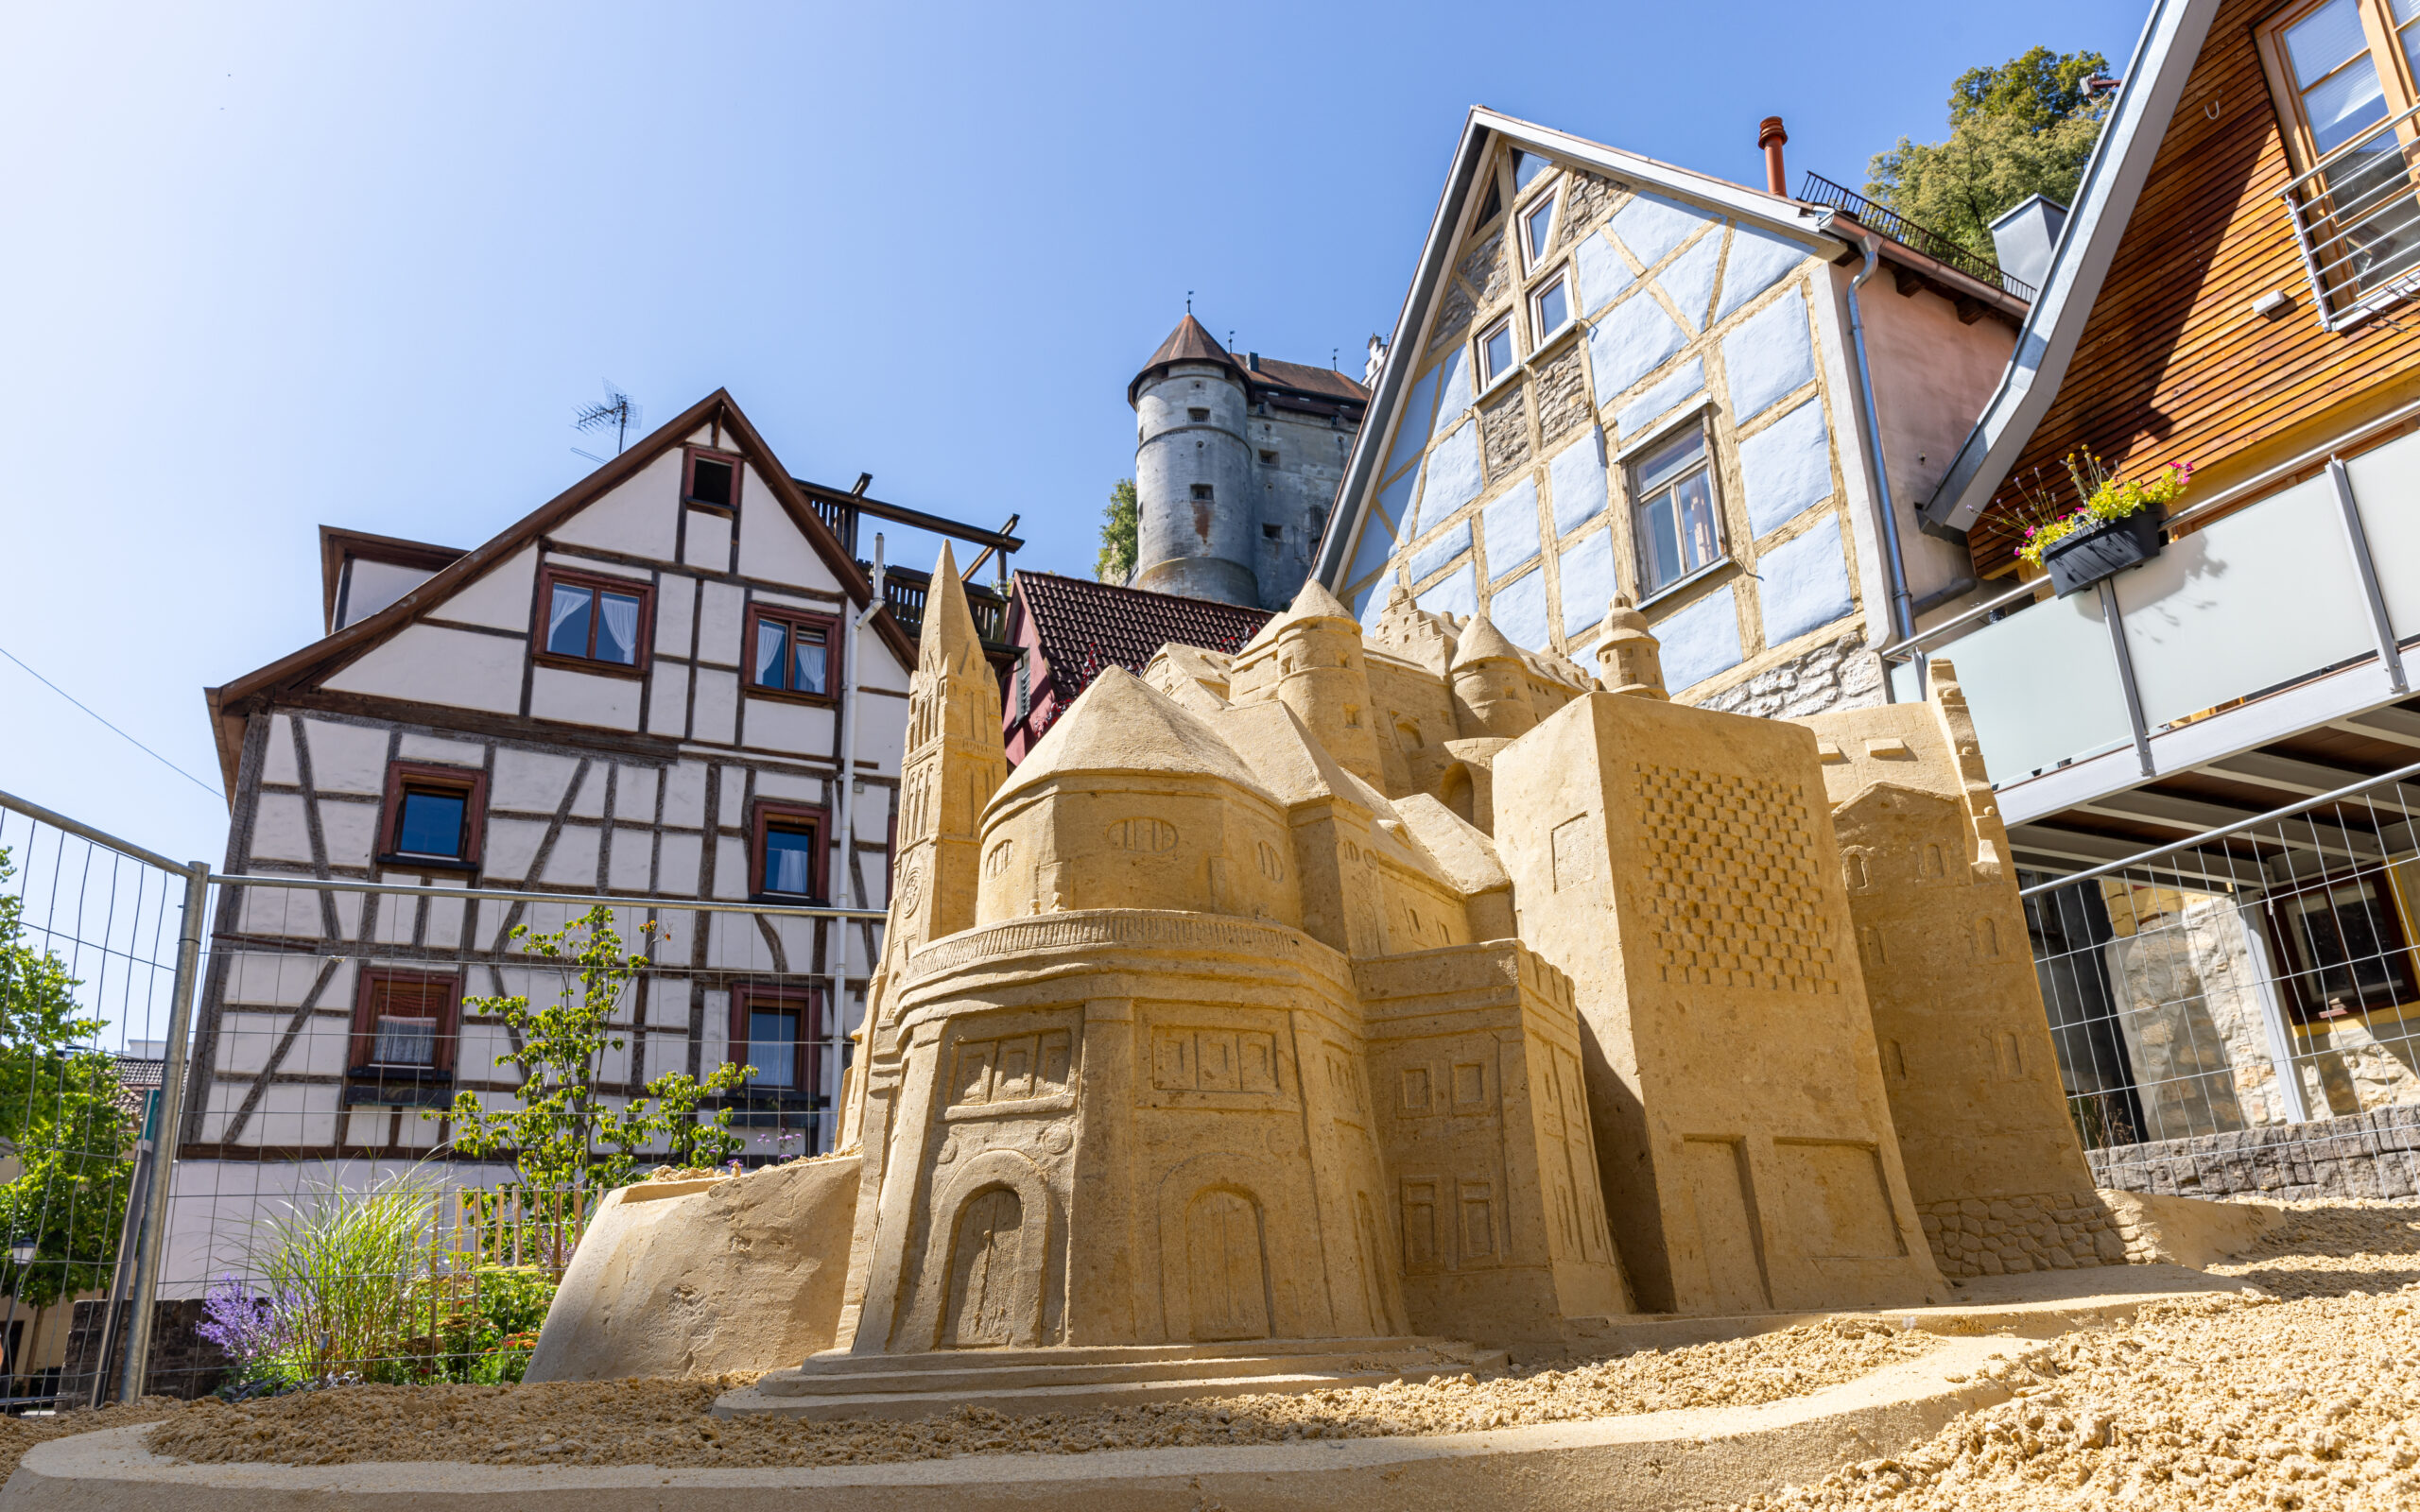 Fotografie einer Sandskulptur des Schloss Hellenstein vor Fachwerkhäusern und dem Schloss Hellenstein